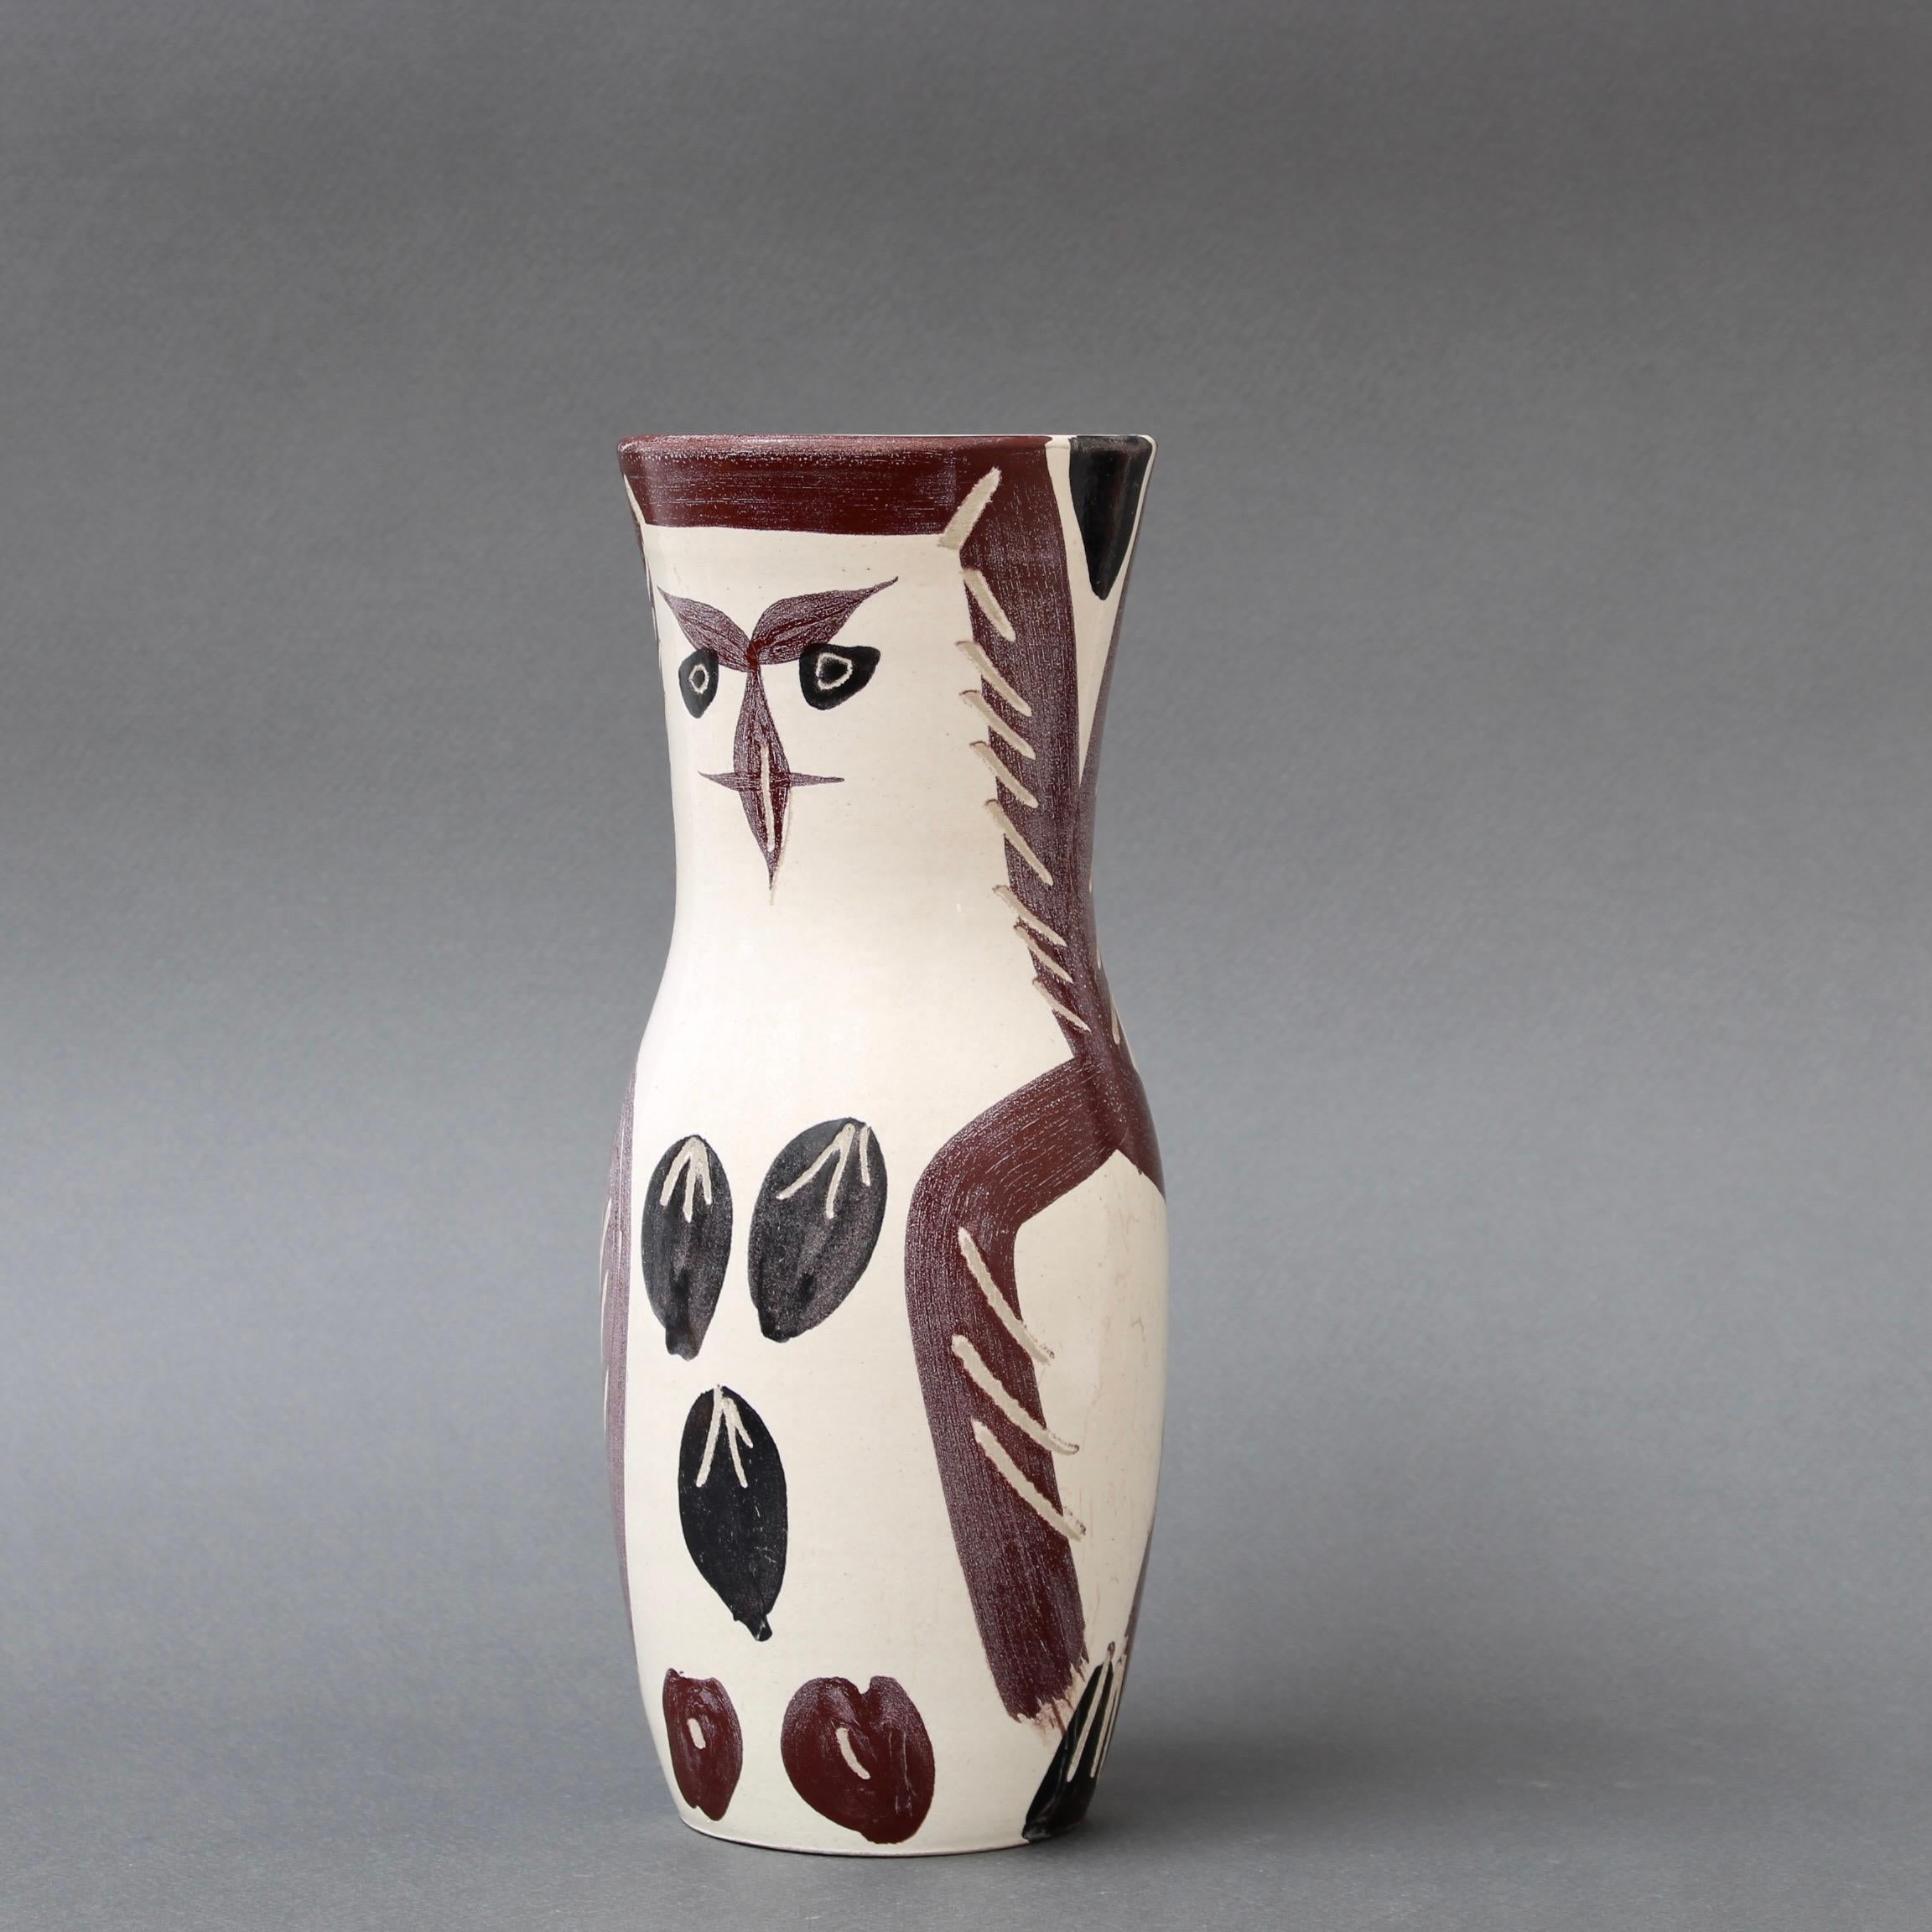 Vase en faïence du milieu du siècle à décor de hibou peint, par Pablo Picasso, Vallauris, France (1952). Il s'agit d'une création vintage en faïence, en édition limitée, tirée à 500 exemplaires (Edition Picasso) à la poterie de Madoura sous la